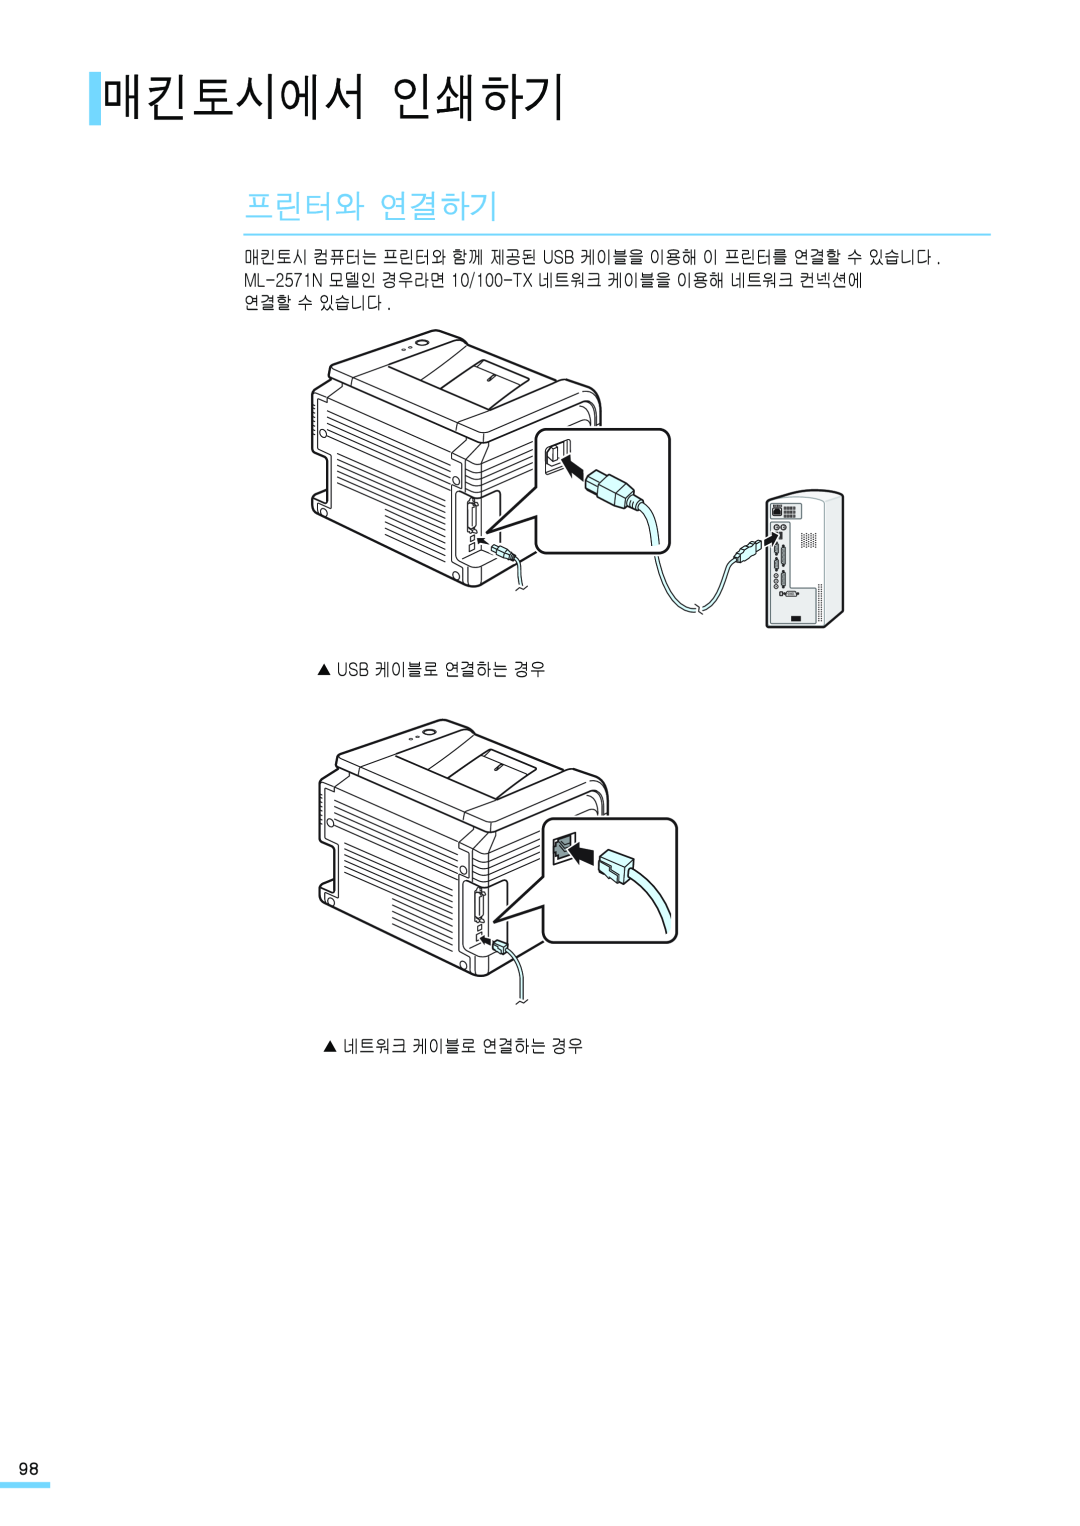 Samsung ML-2571N manual 매킨토시에서 인쇄하기, 프린터와 연결하기, 연결할 수 있습니다 Usb 케이블로 연결하는 경우 네트워크 케이블로 연결하는 경우 